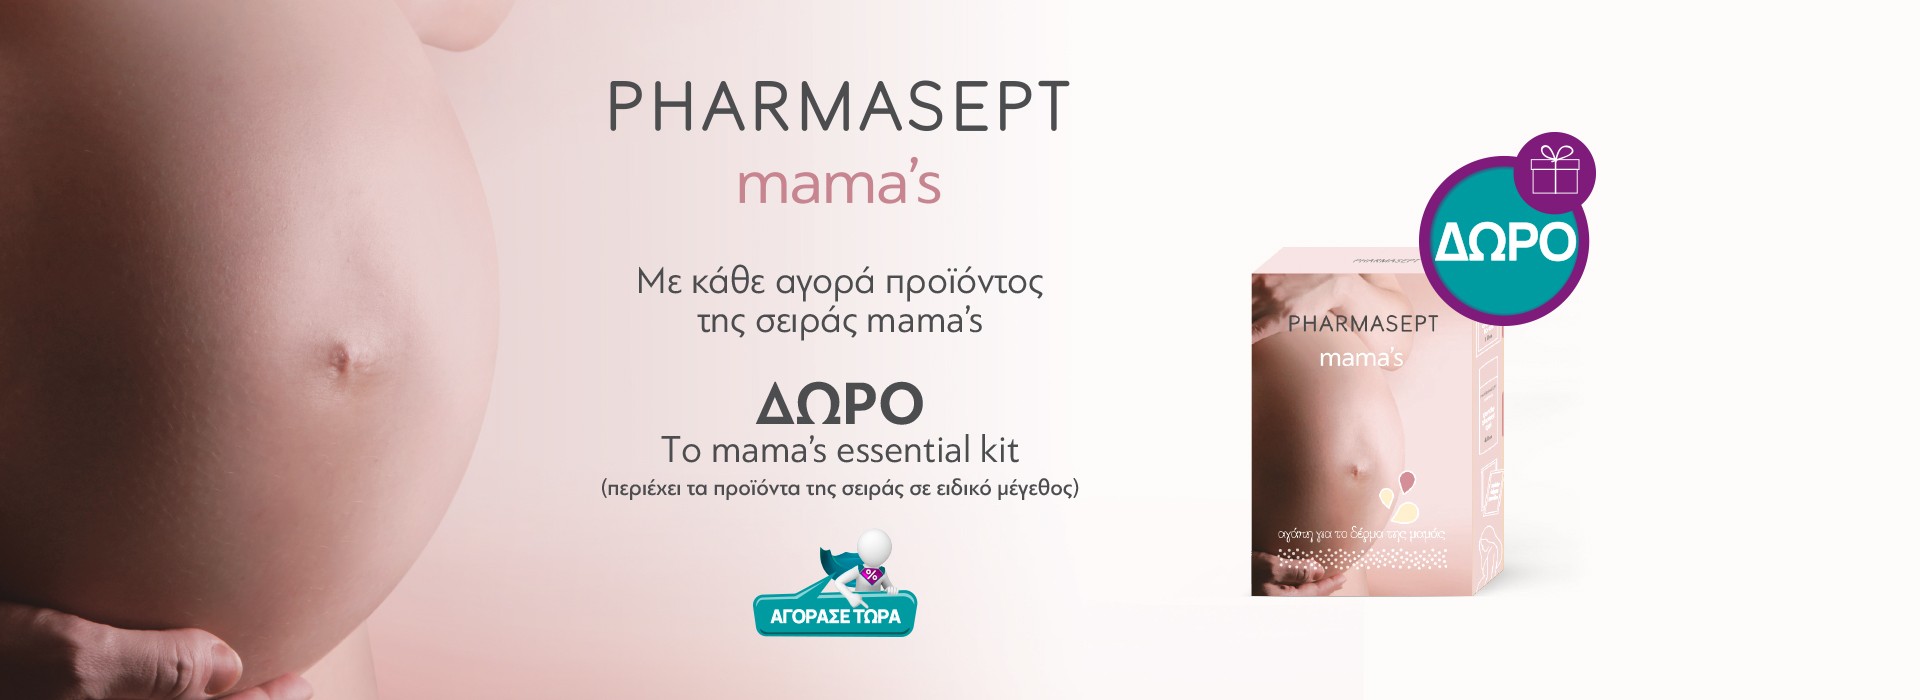 pharmasept mamas